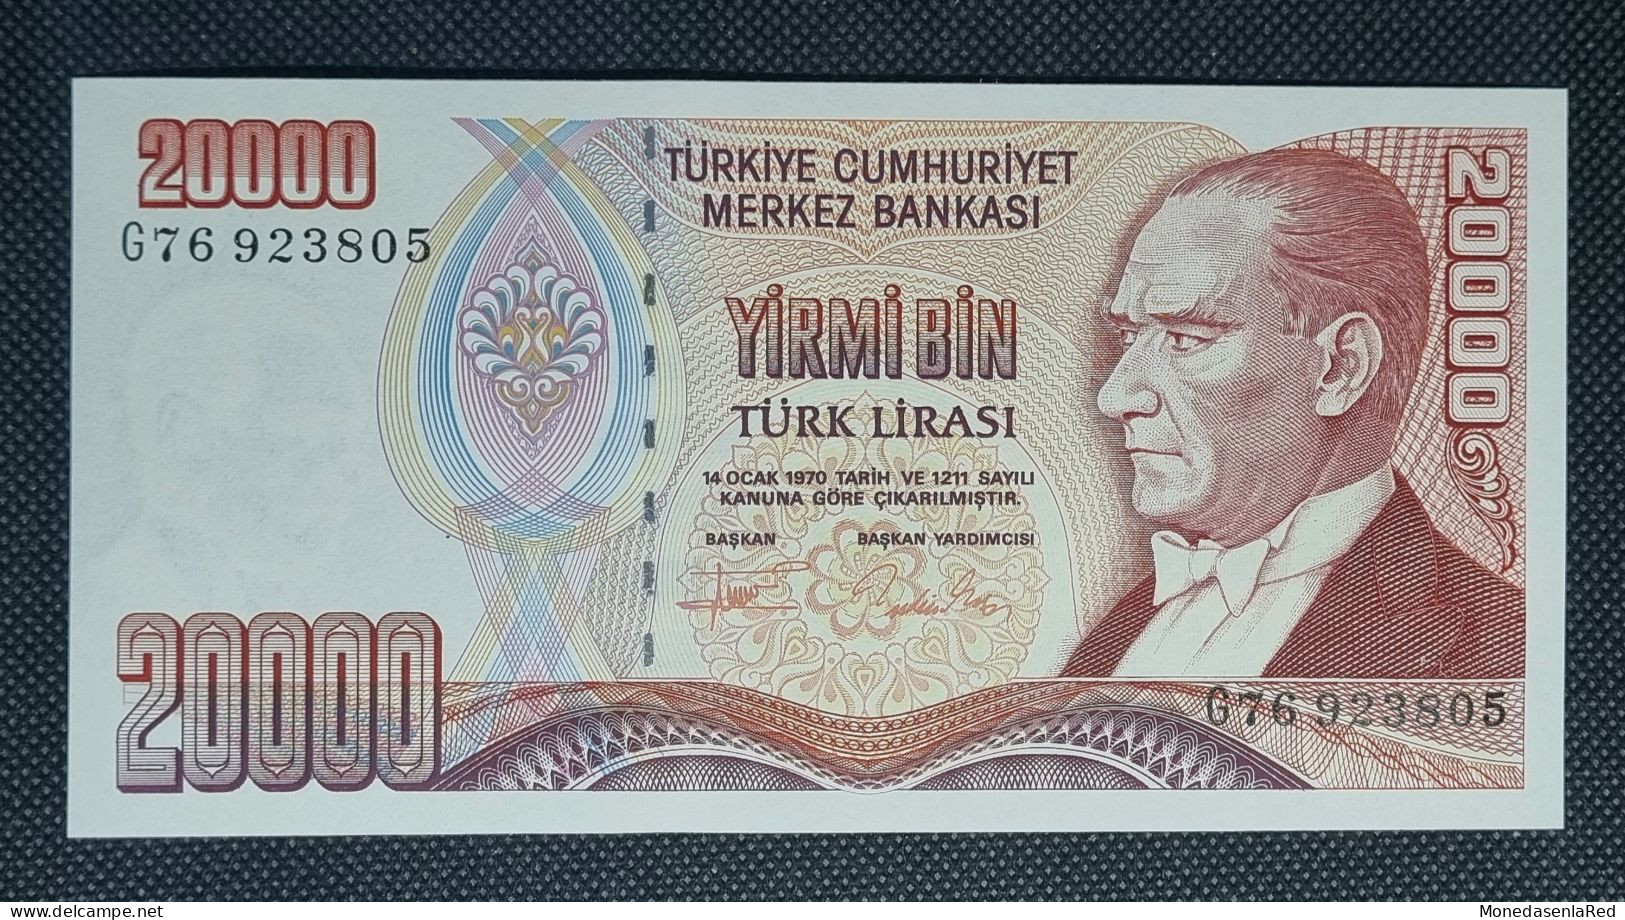 TURQUIA / TURKEY 20000 LIRAS TURCAS 1995 SIN CIRCULAR / UNC. P-202 - Turquie